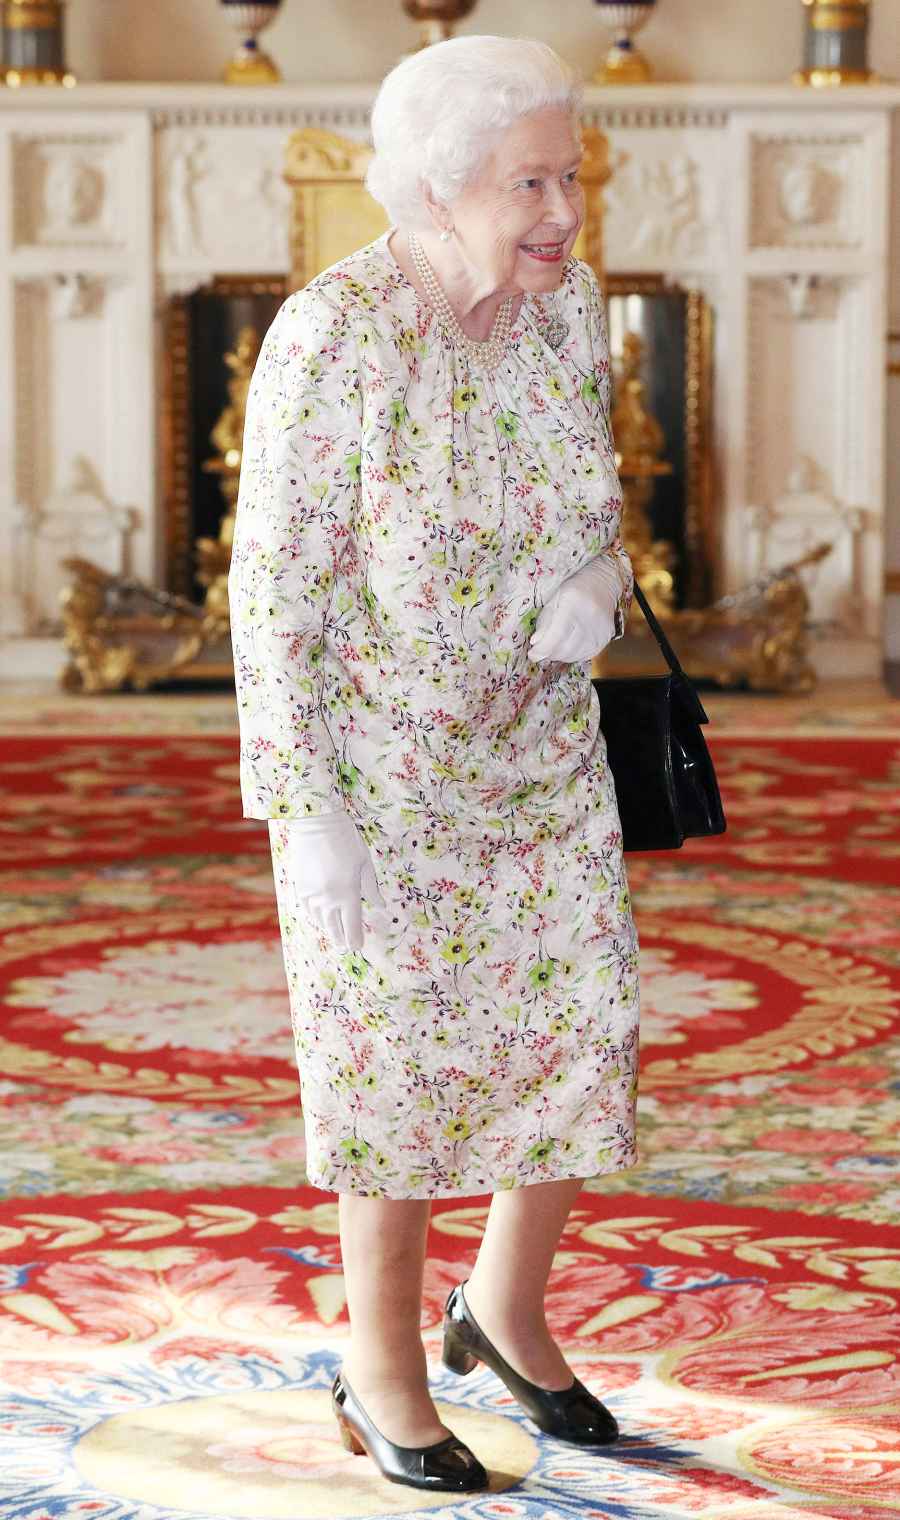 Queen Elizabeth Floral Dress June 25, 2019